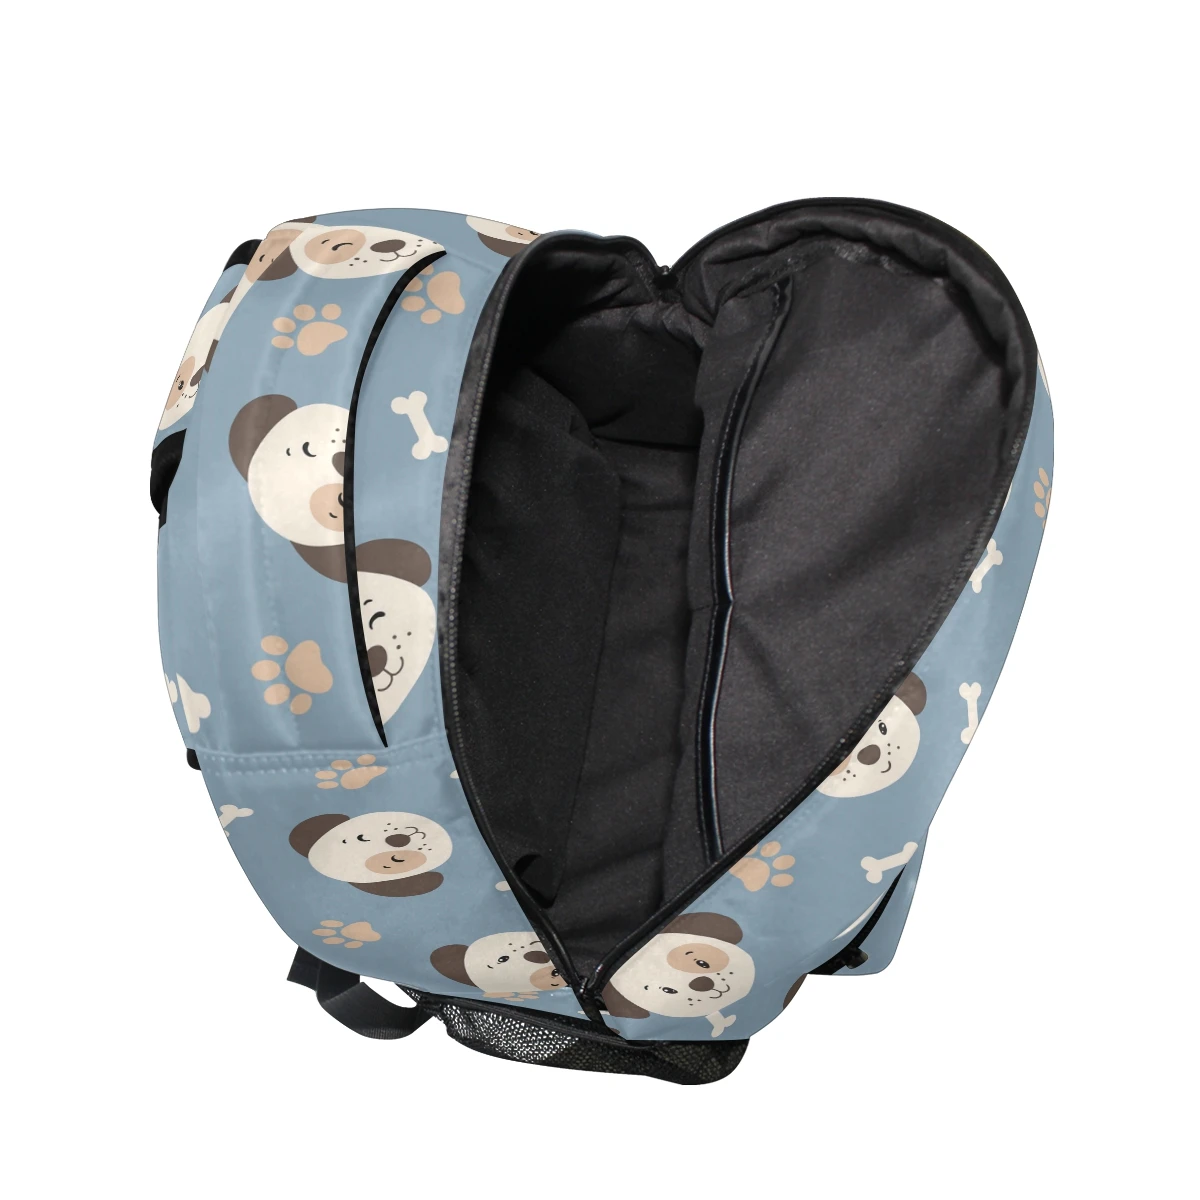 ALAZA 2019 Новые рюкзаки школьные сумки забавная Одежда для собак принт для девочек-подростков детская школьная сумка рюкзак для женщин